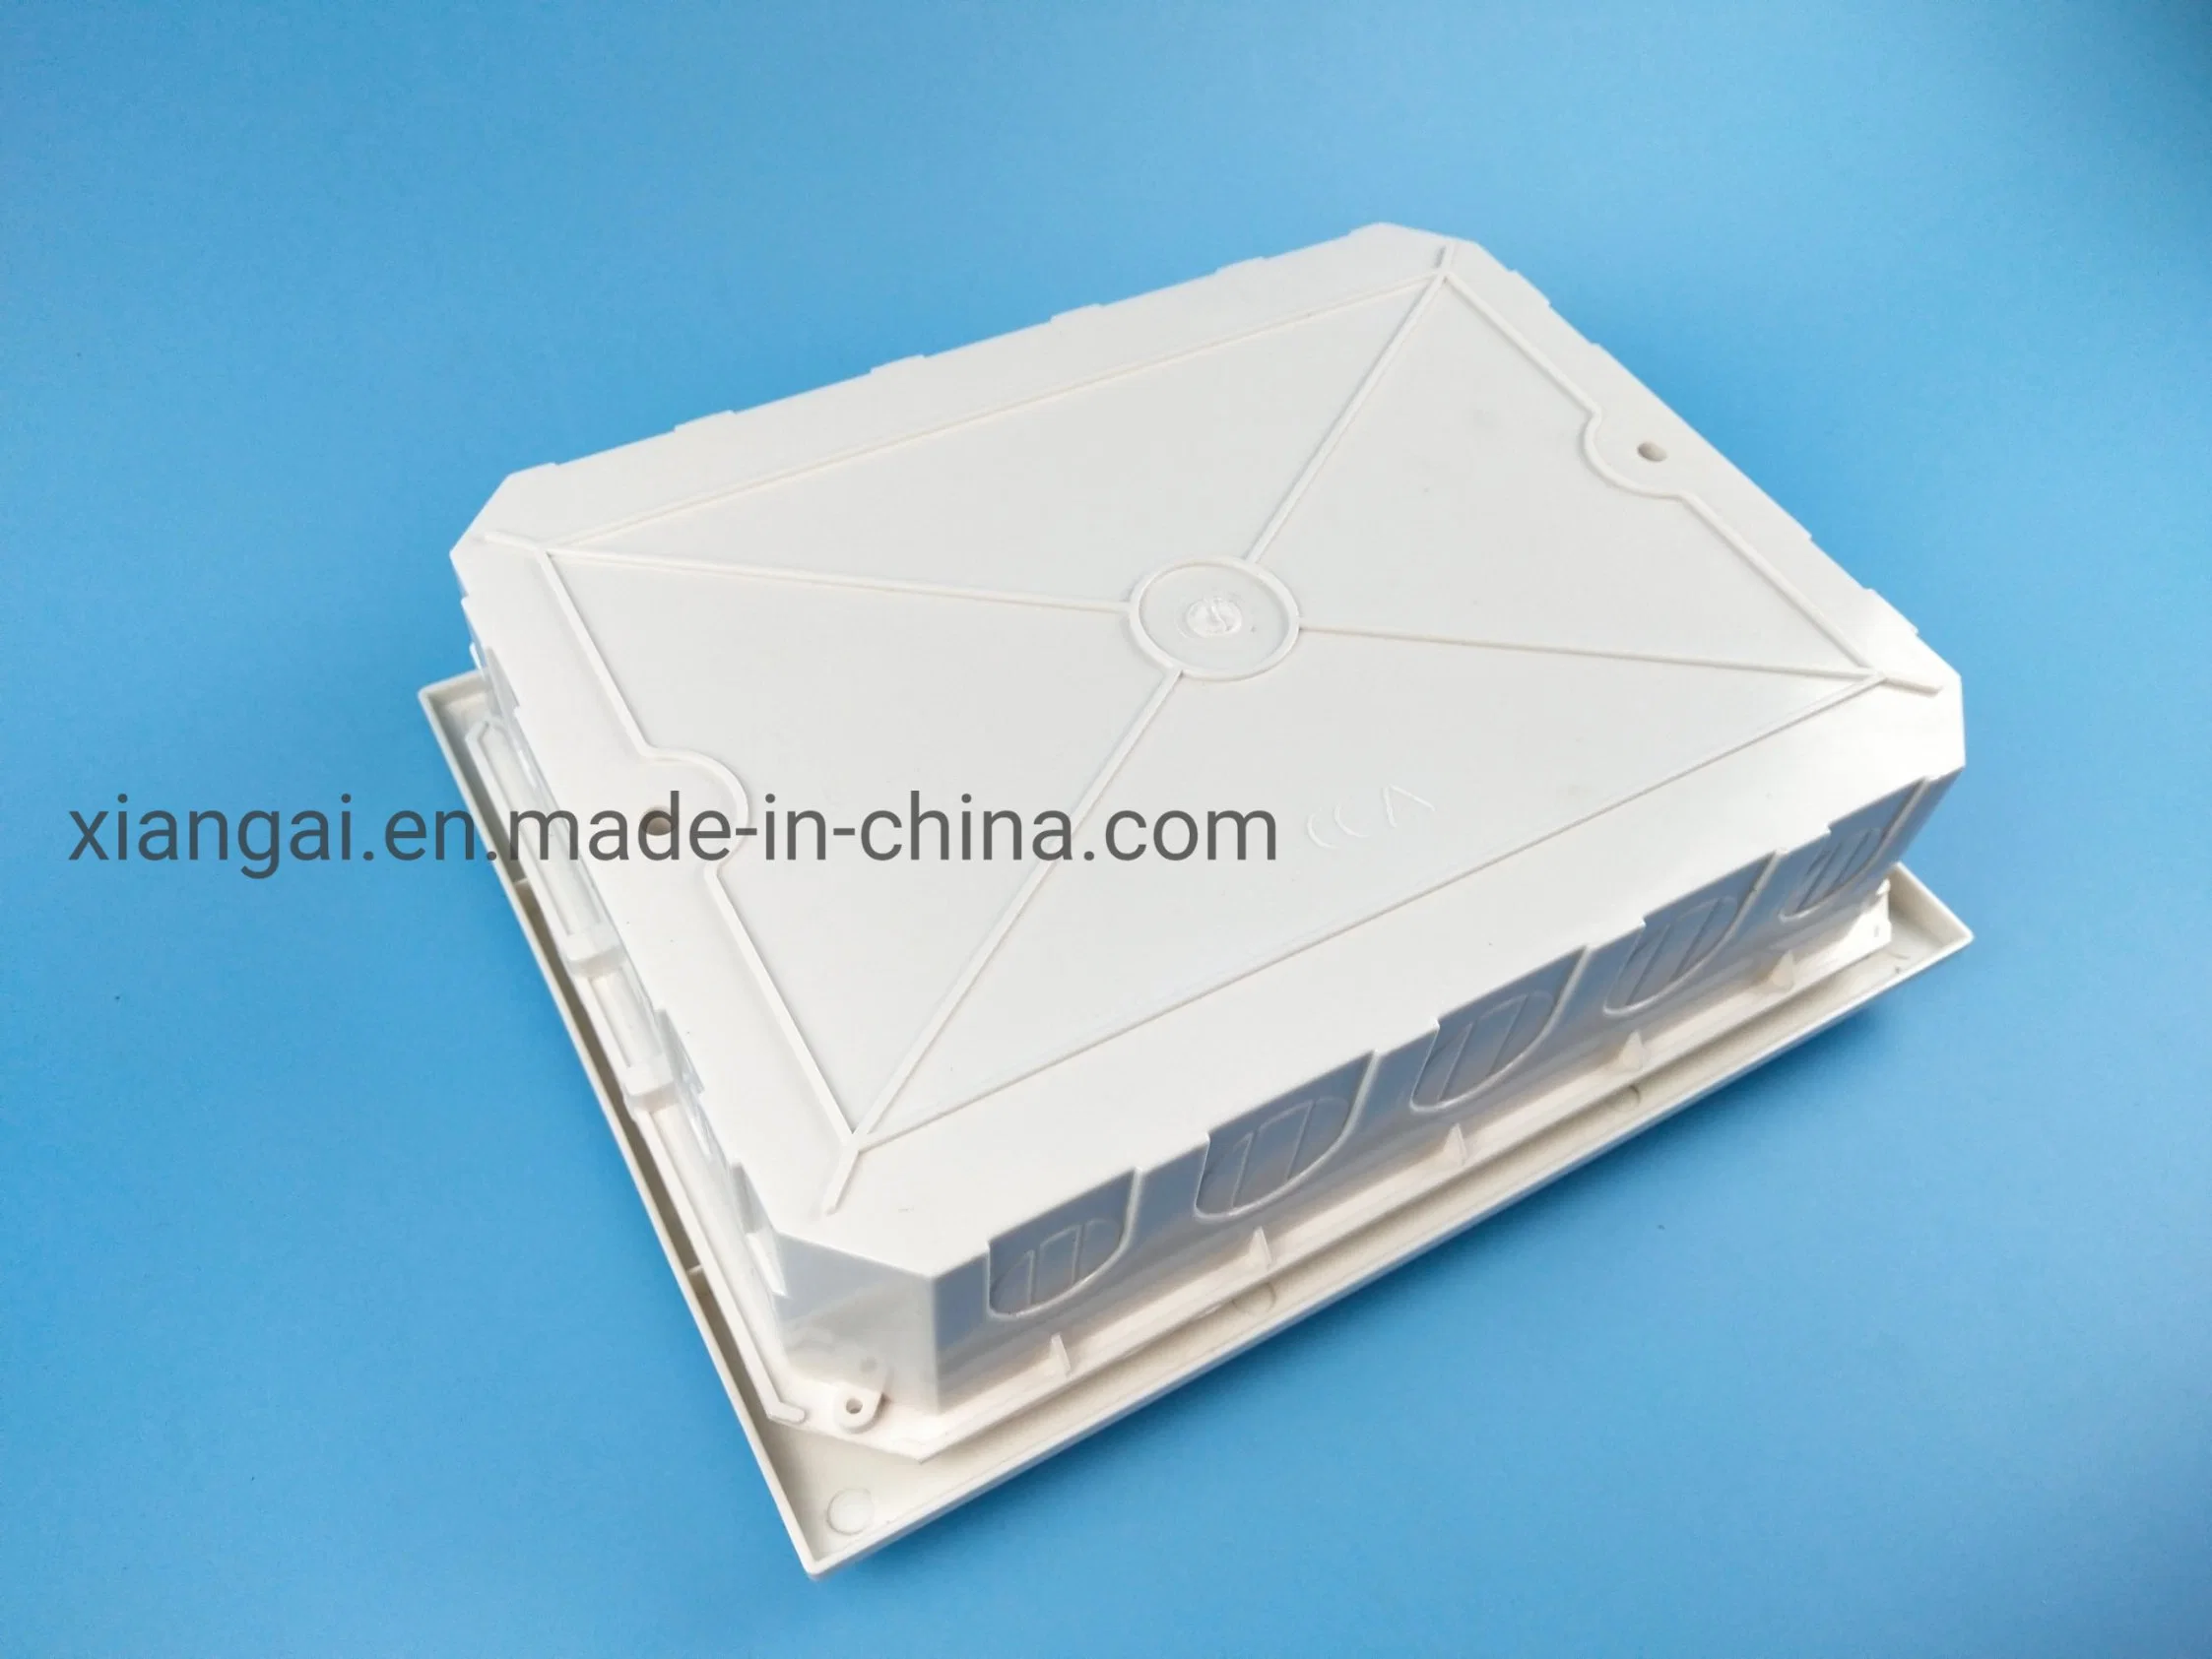 صندوق تثبيت مخصص من البلاستيك مصنوع من مادة البولي فينيل كلوريد (PP) مصنوعة من مادة ABS كهربائية للتركيب على الحائط مورد الصندوق الكهربائي للمجالس